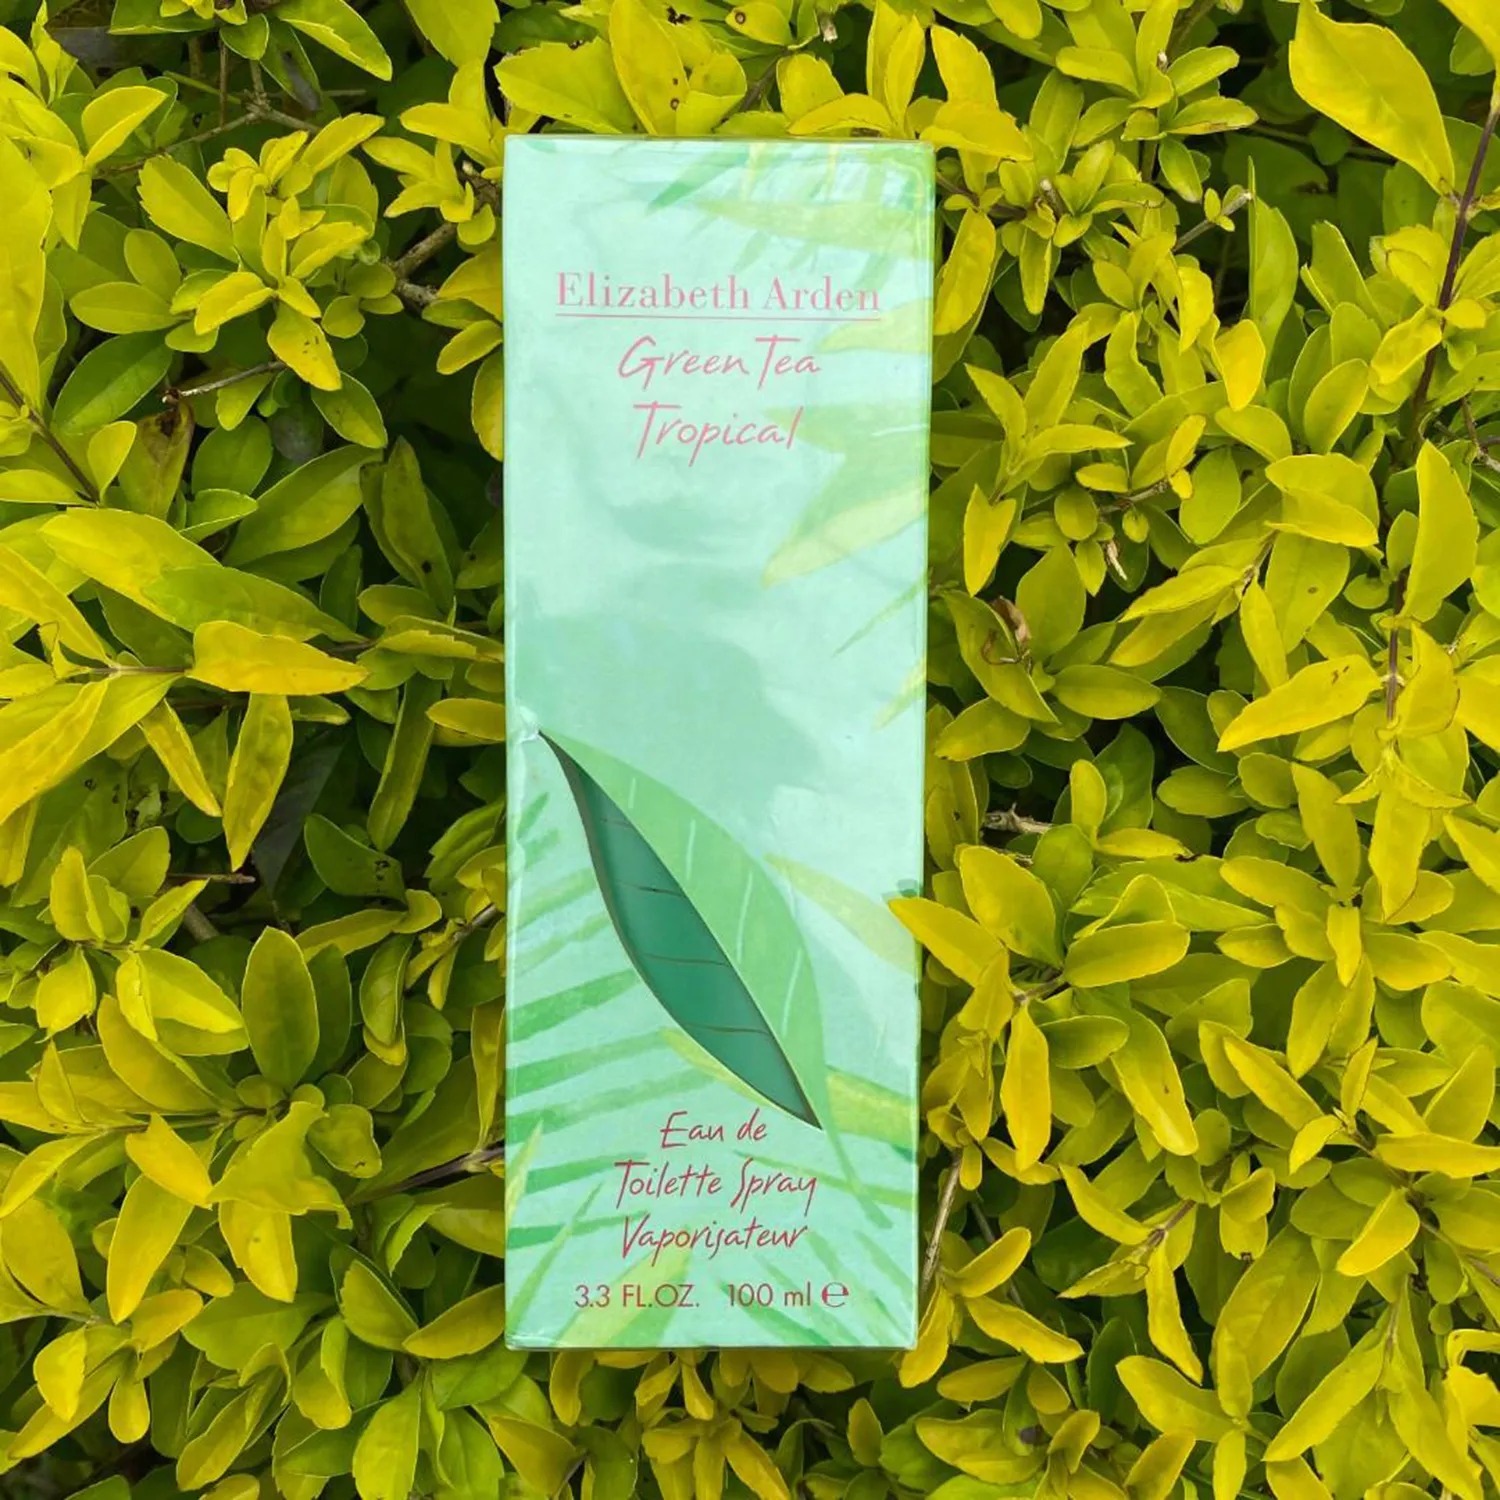 Elizabeth Arden green tea tropical EDT 100 ml น้ำหอมสำหรับผู้หญิง กลิ่นธรรมชาติ หวานๆ ผลไม้ๆ ให้ความรู้สึกสดชื่น คลายร้อน